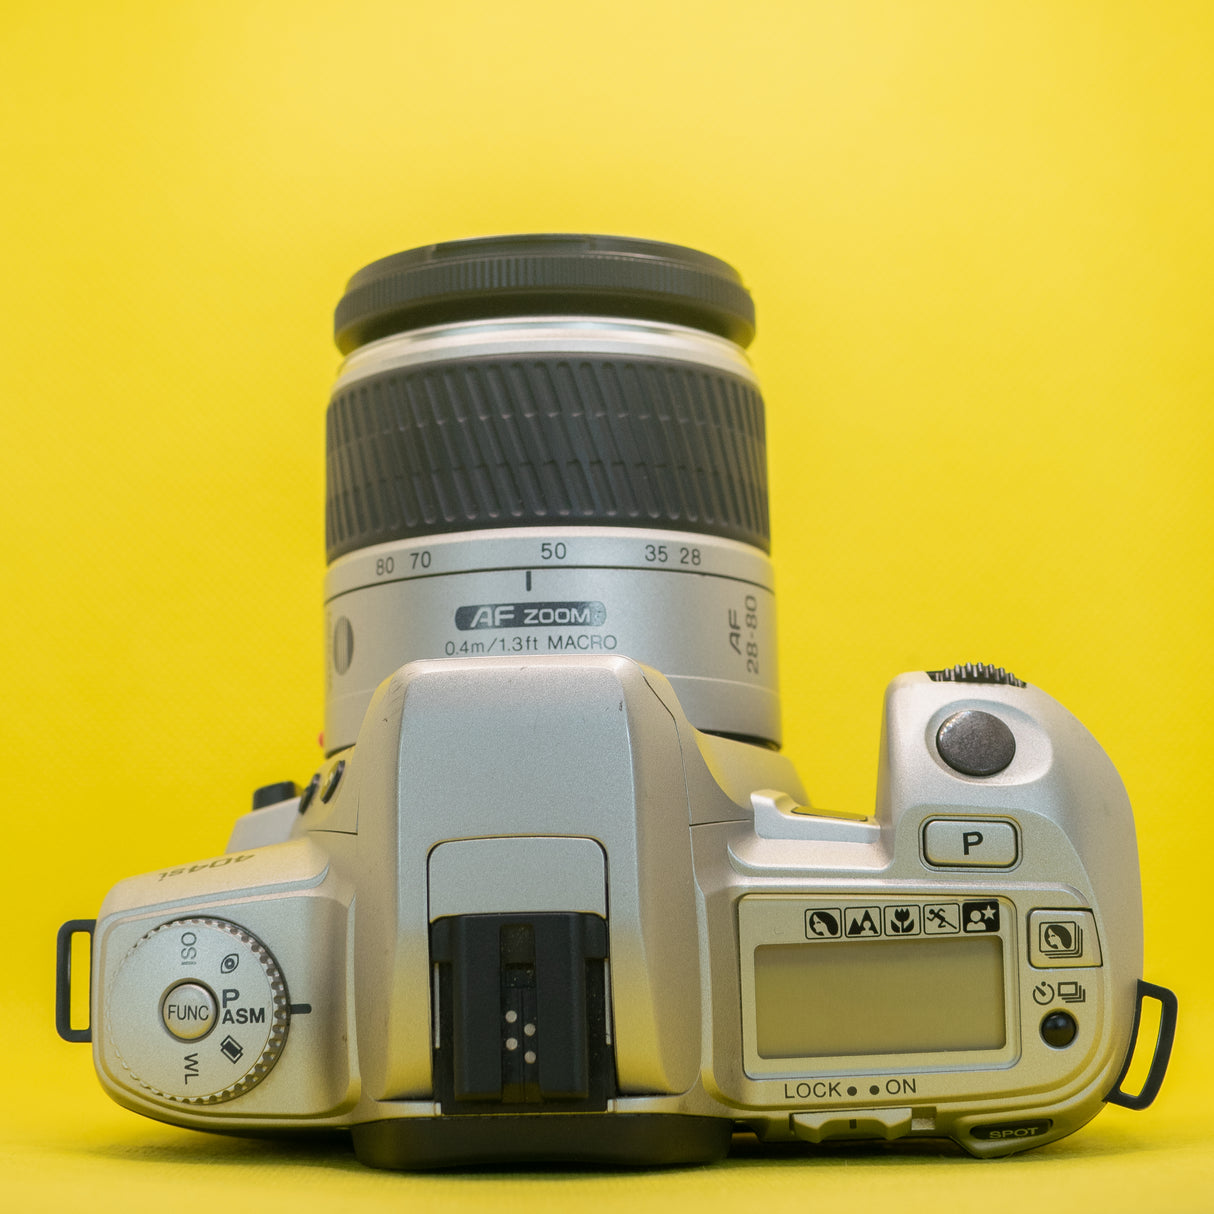 Minolta Dynax 404si - Fotocamera reflex premium da 35 mm